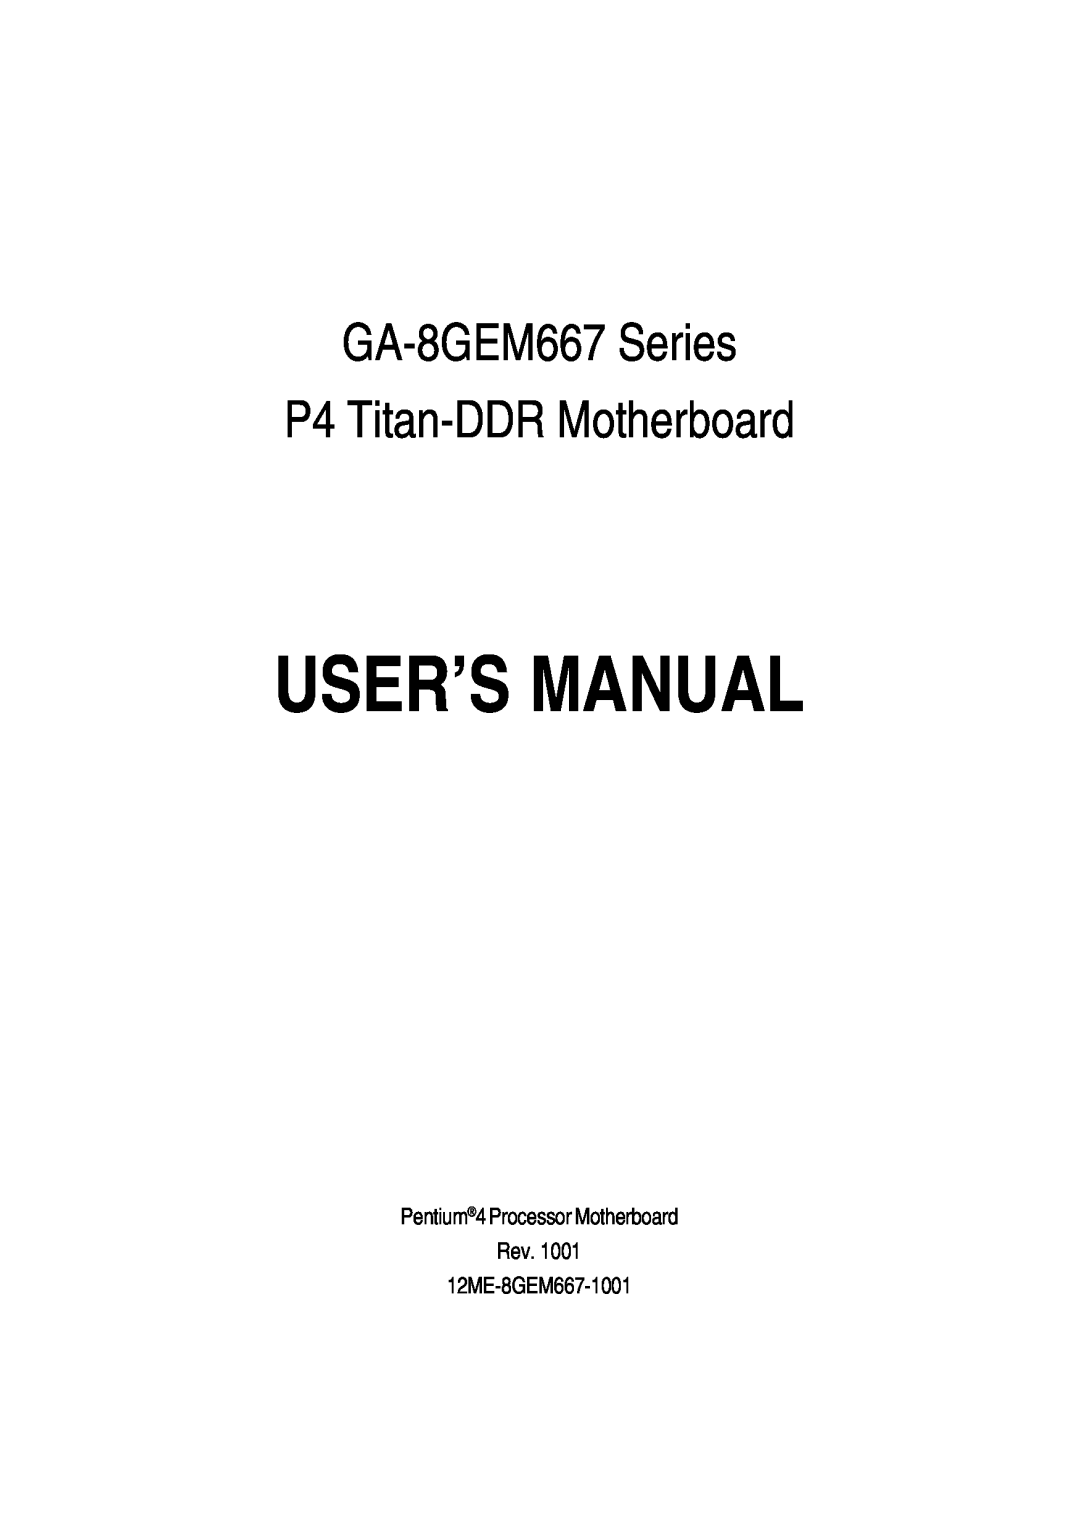 Gigabyte manual User’S Manual, GA-8GEM667 Series P4 Titan-DDR Motherboard 